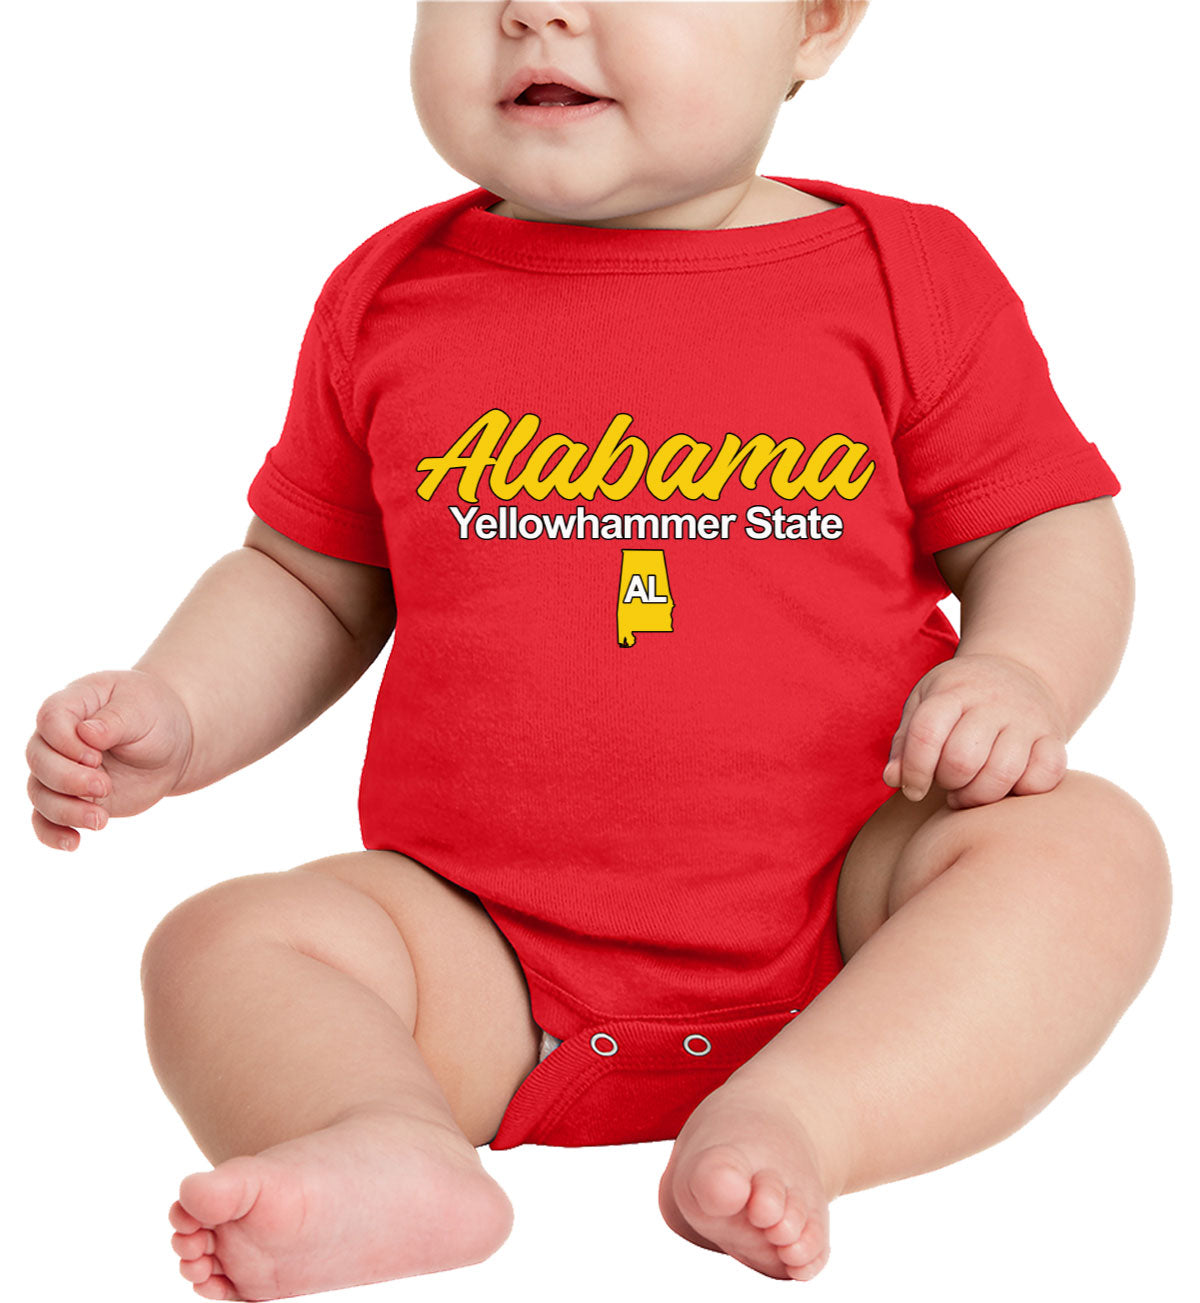 Alabama Yellowhammer State Baby Onesie